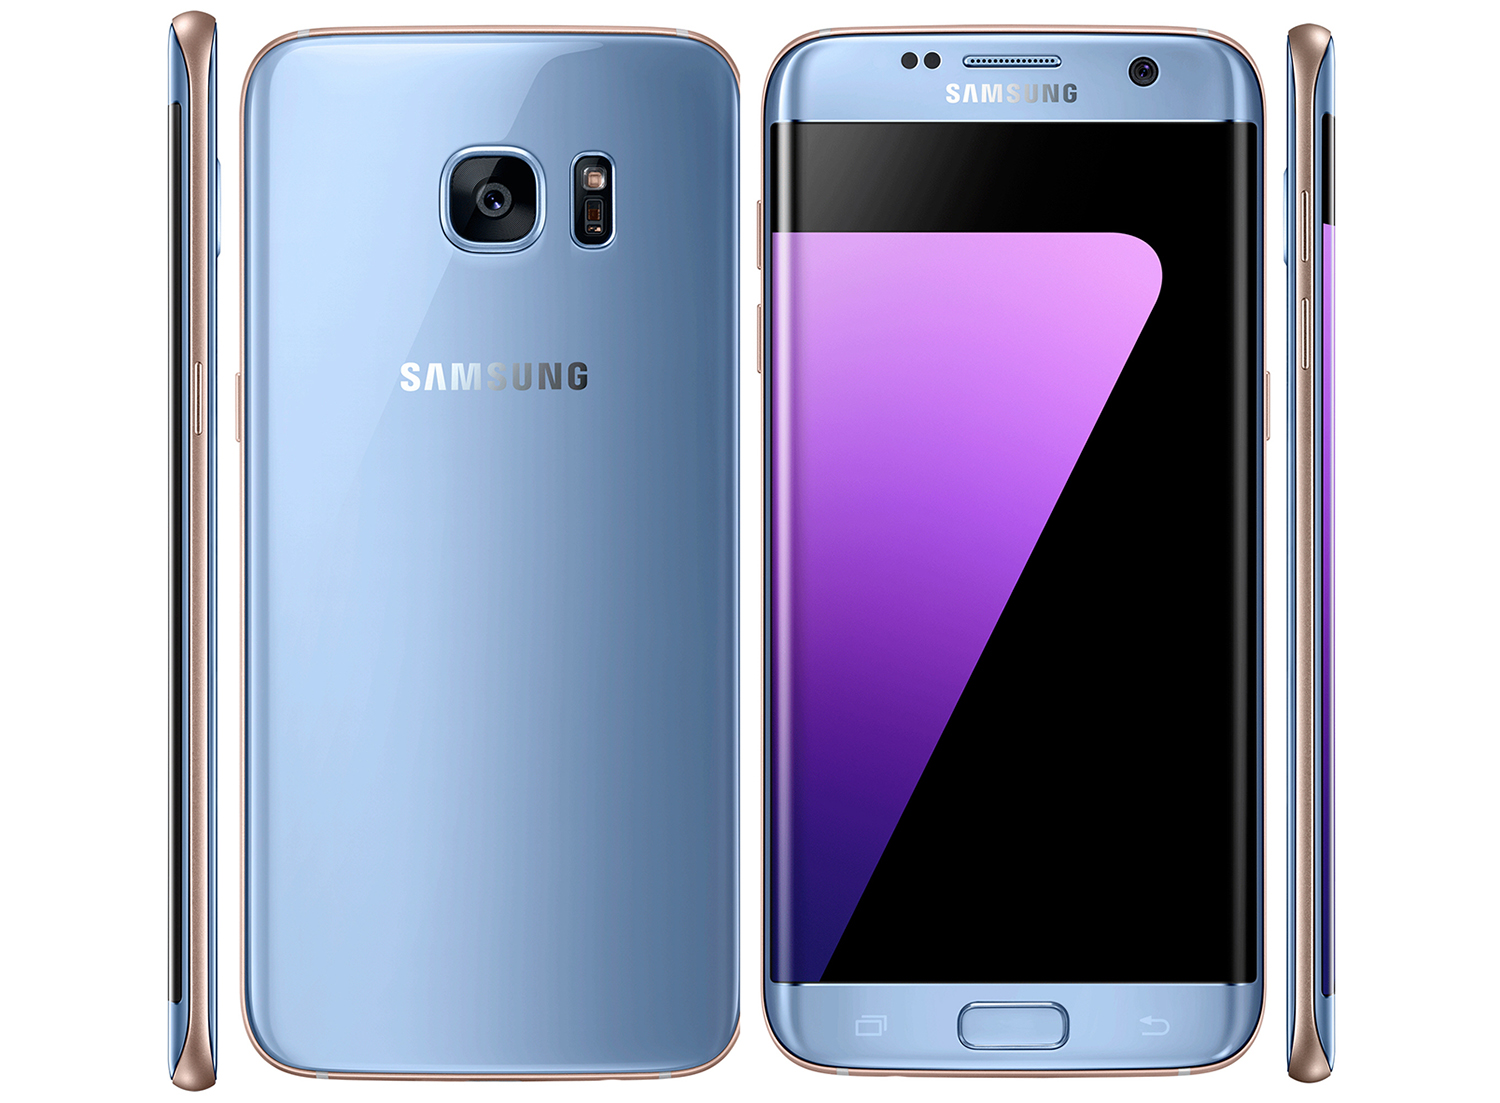 Samsung Galaxy S7 edge Blue Coral_2